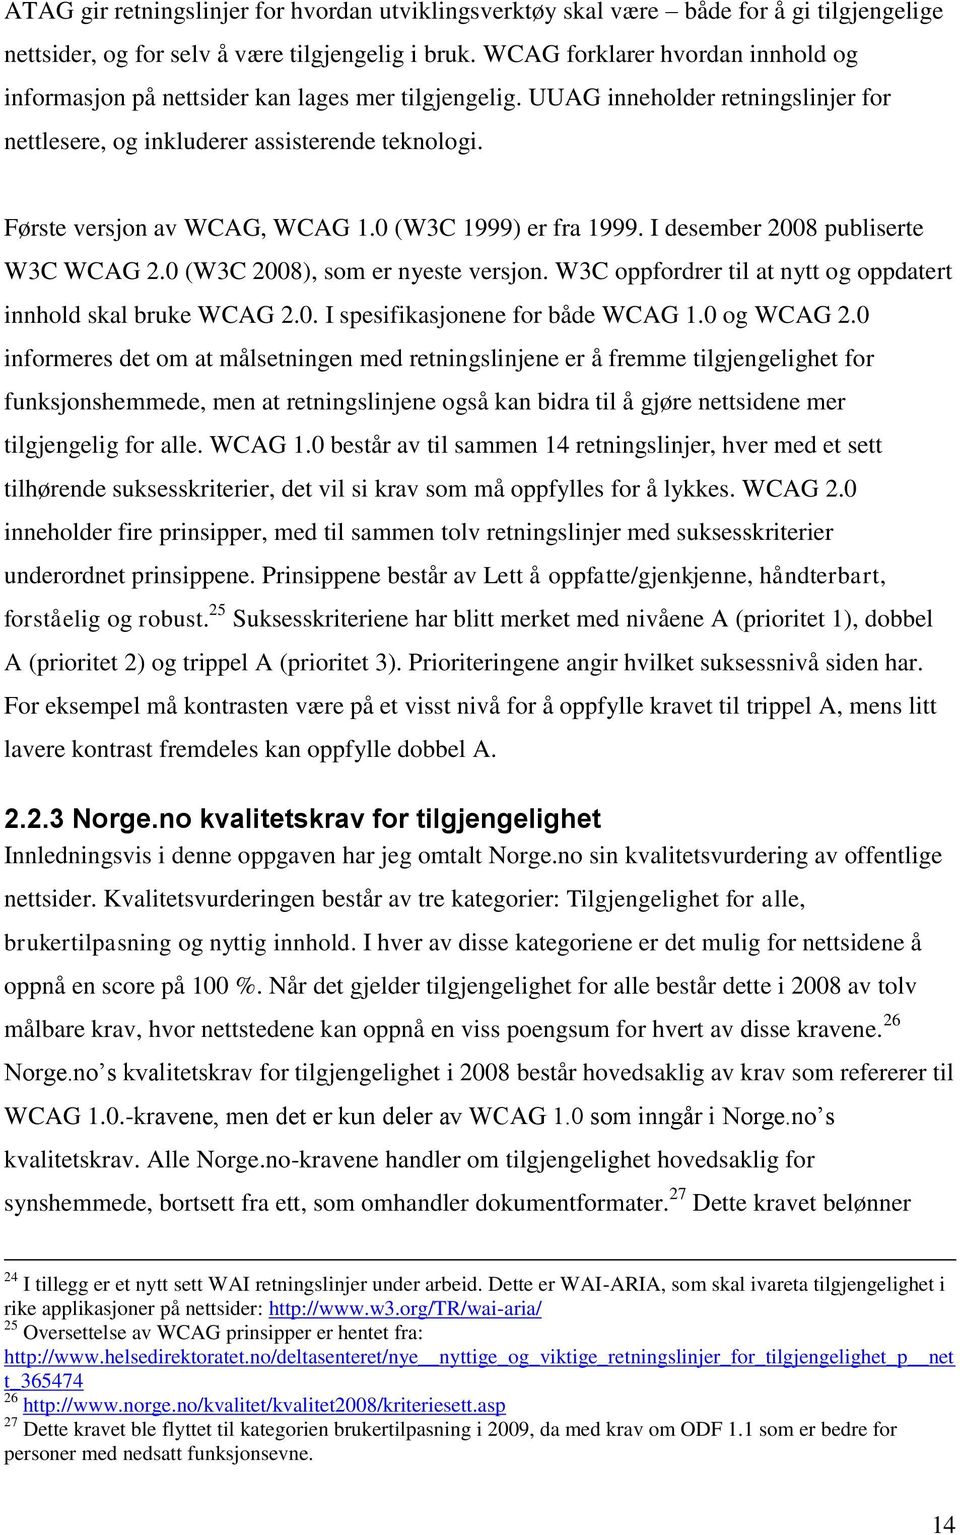 Første versjon av WCAG, WCAG 1.0 (W3C 1999) er fra 1999. I desember 2008 publiserte W3C WCAG 2.0 (W3C 2008), som er nyeste versjon. W3C oppfordrer til at nytt og oppdatert innhold skal bruke WCAG 2.0. I spesifikasjonene for både WCAG 1.